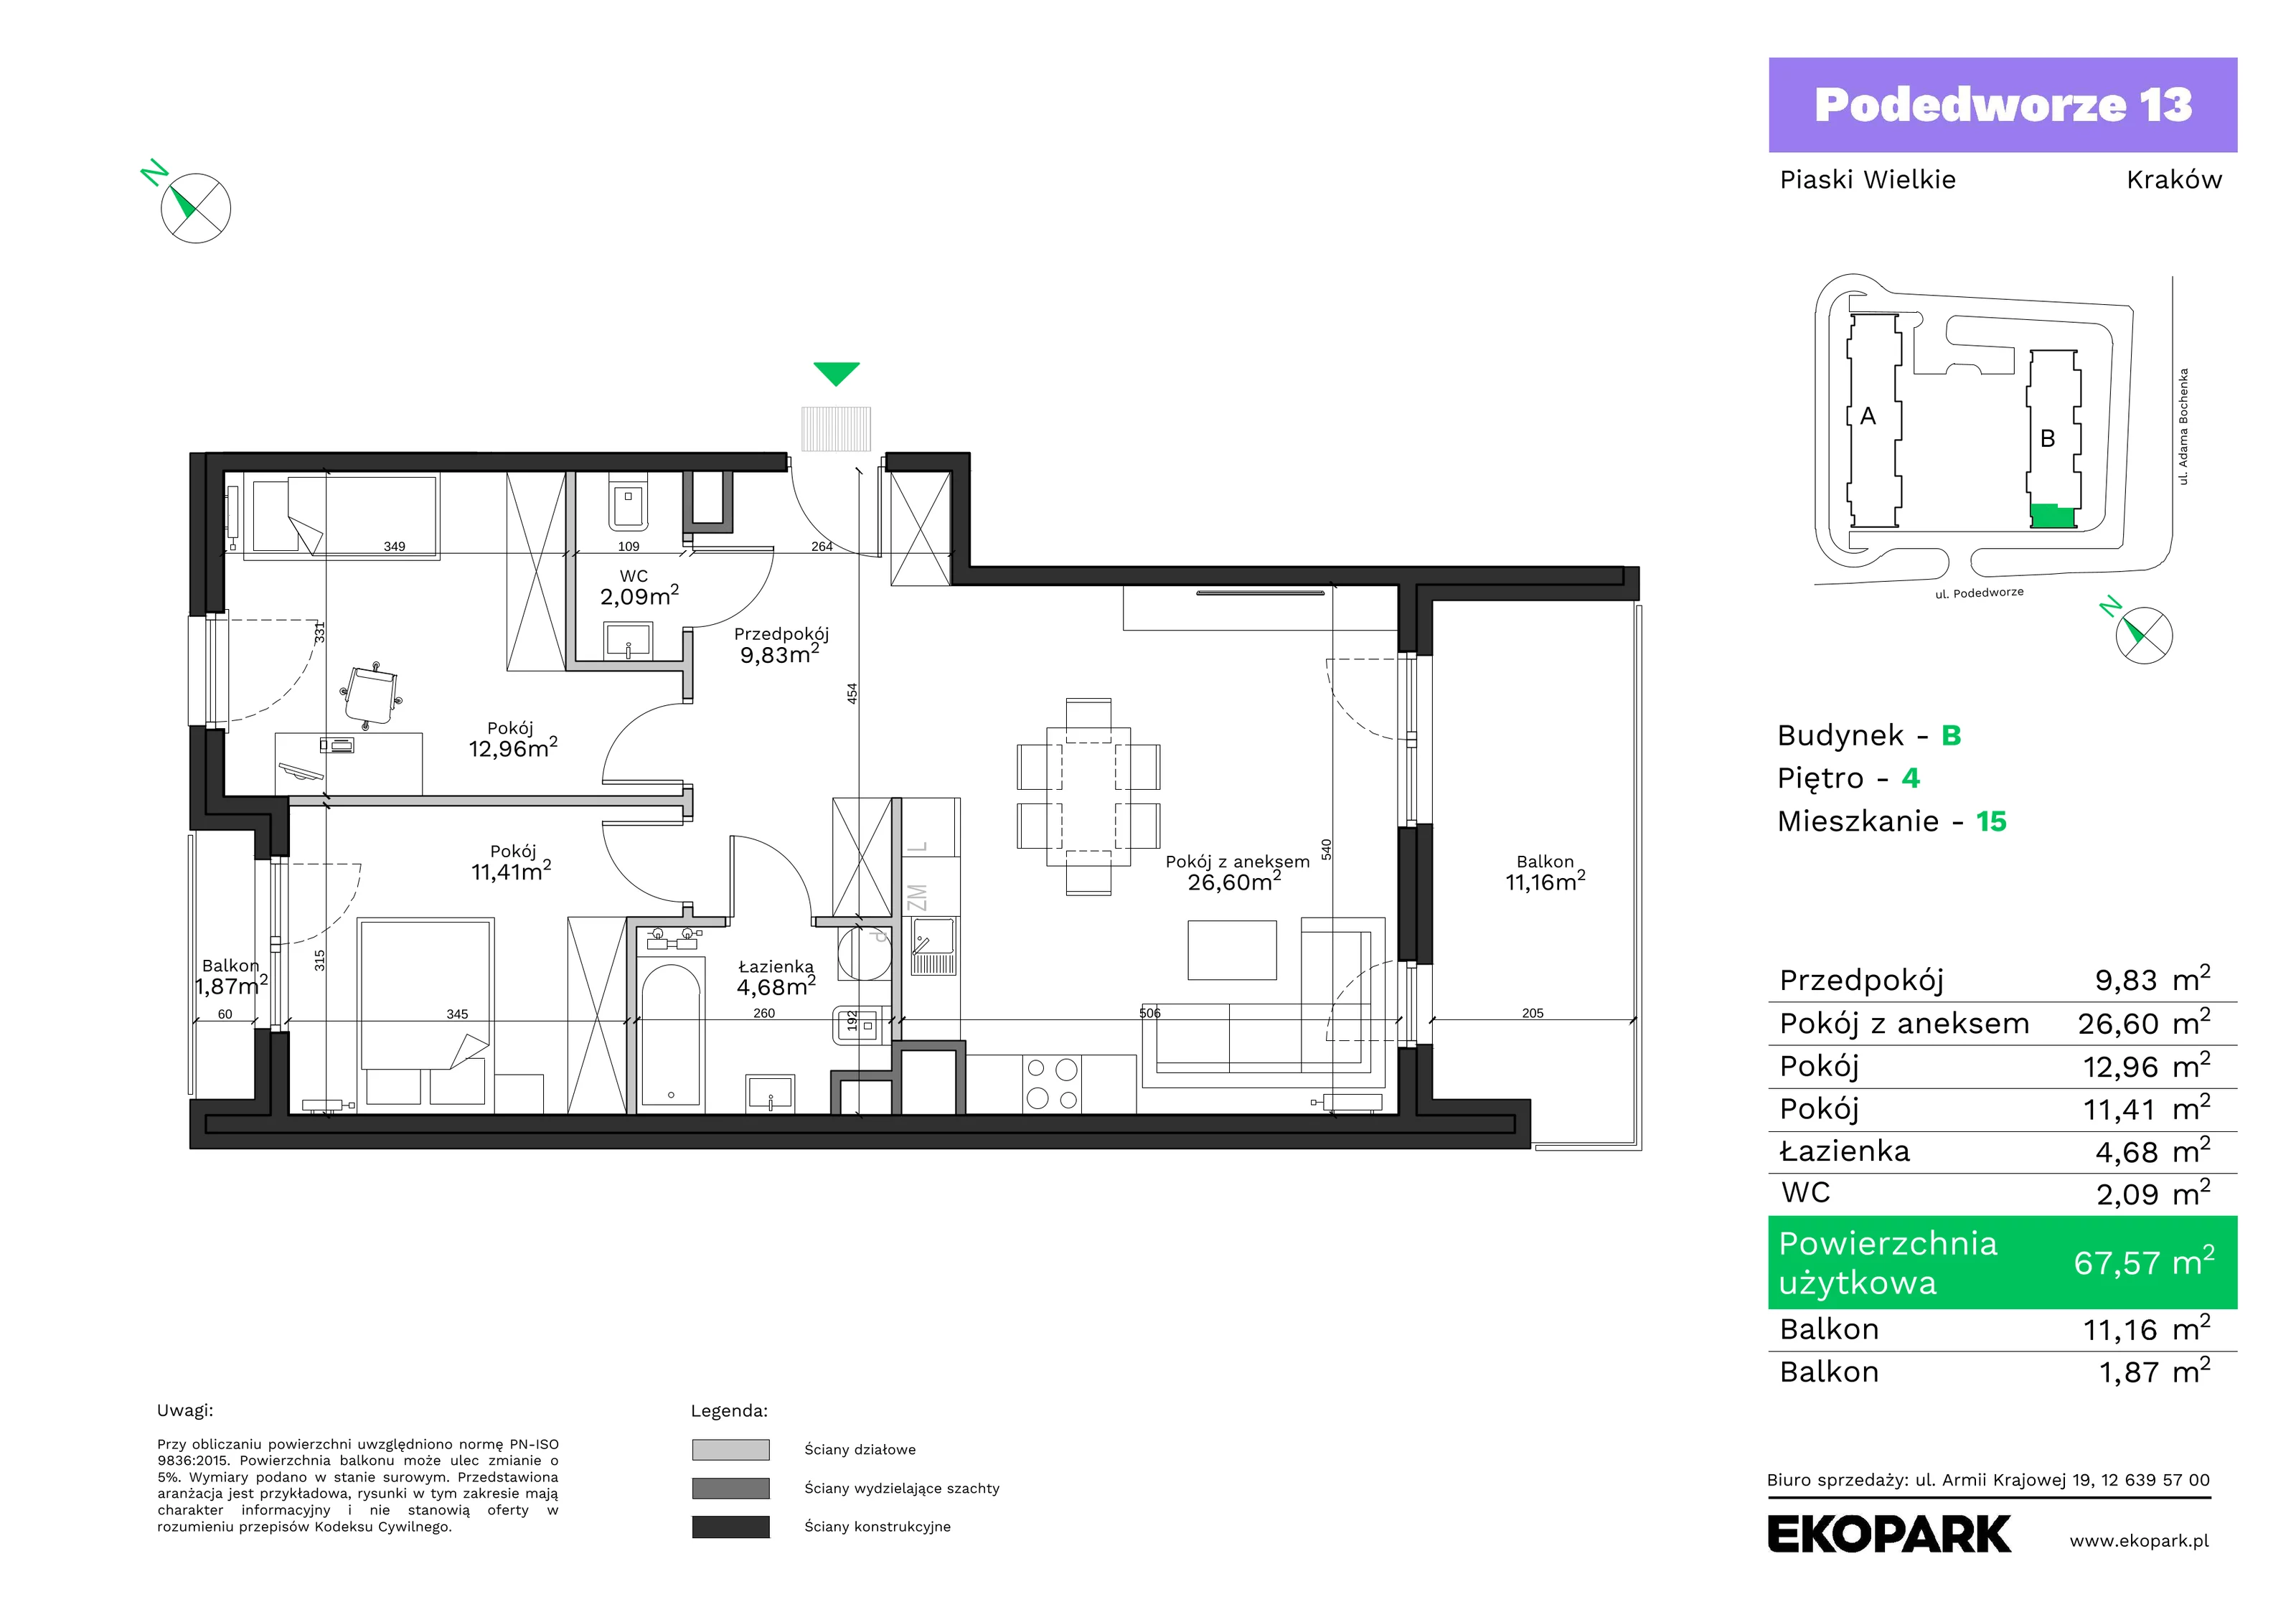 Mieszkanie 67,57 m², piętro 4, oferta nr B15, Podedworze 13, Kraków, Podgórze Duchackie, Piaski Wielkie, ul. Podedworze 13